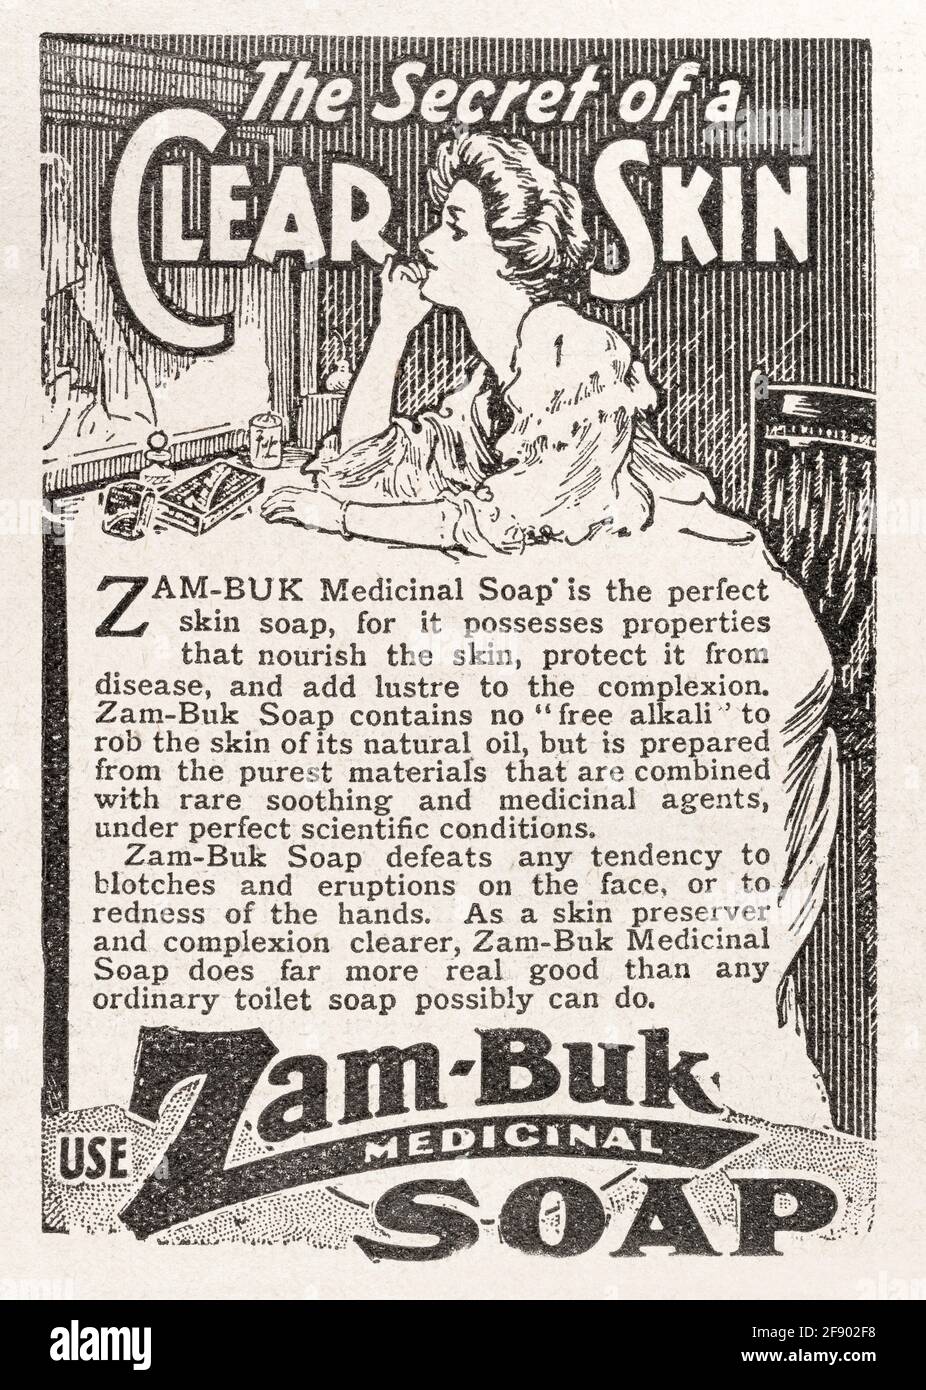 Werbung für alte edwardianische Zam Buk-Seife aus dem Jahr 1911 - Standards für die Vorwerbung. Alte Hautpflege-Werbung, Geschichte der Werbung. Stockfoto